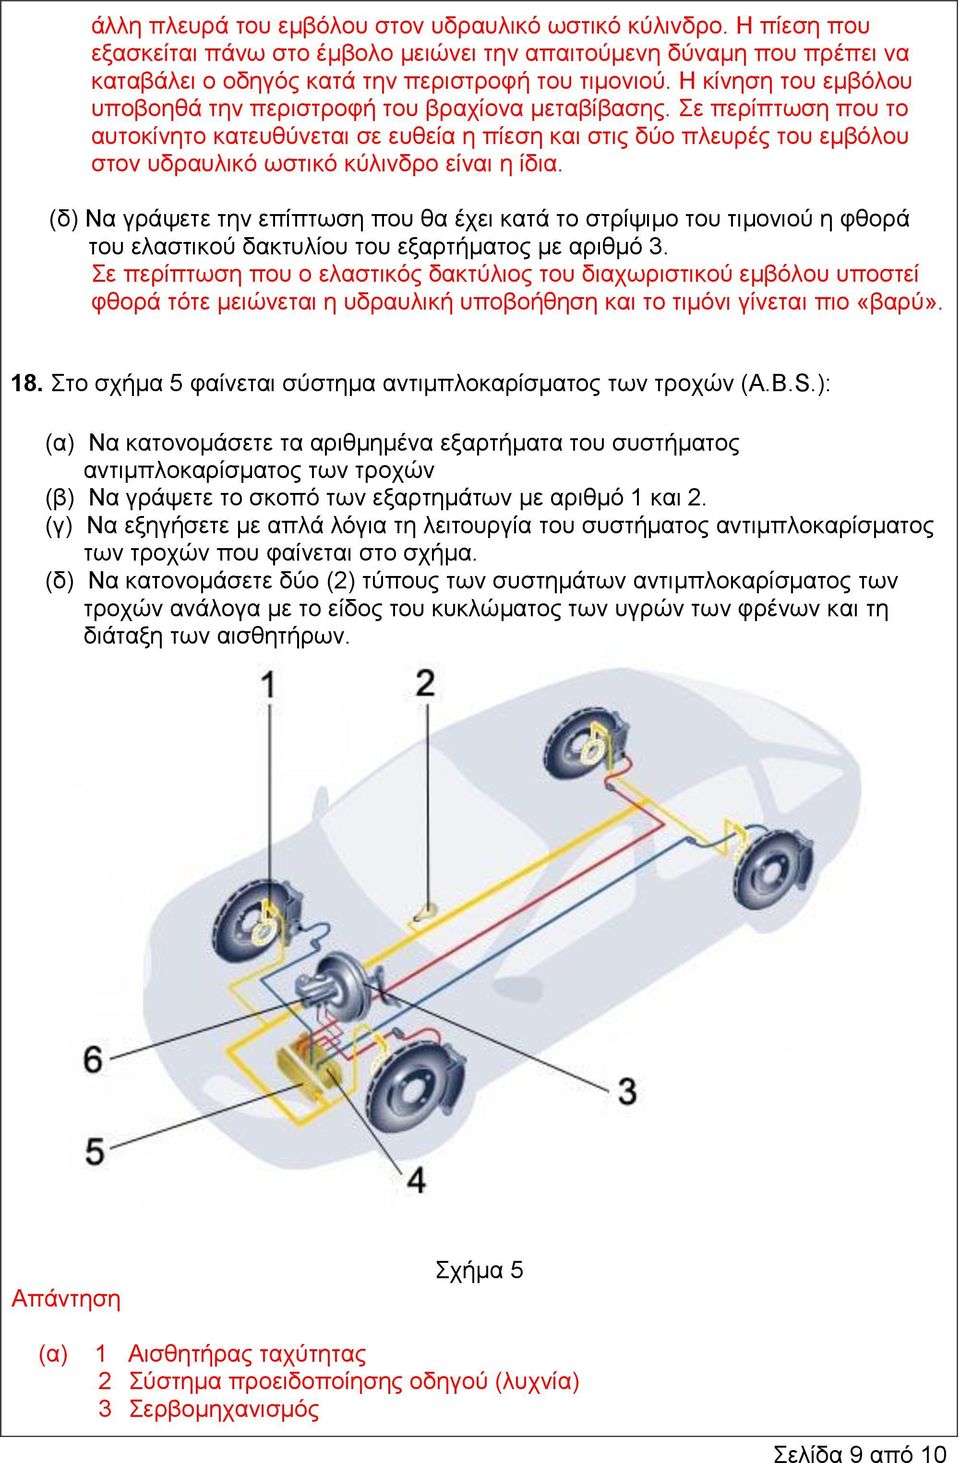 Σε περίπτωση που το αυτοκίνητο κατευθύνεται σε ευθεία η πίεση και στις δύο πλευρές του εμβόλου στον υδραυλικό ωστικό κύλινδρο είναι η ίδια.